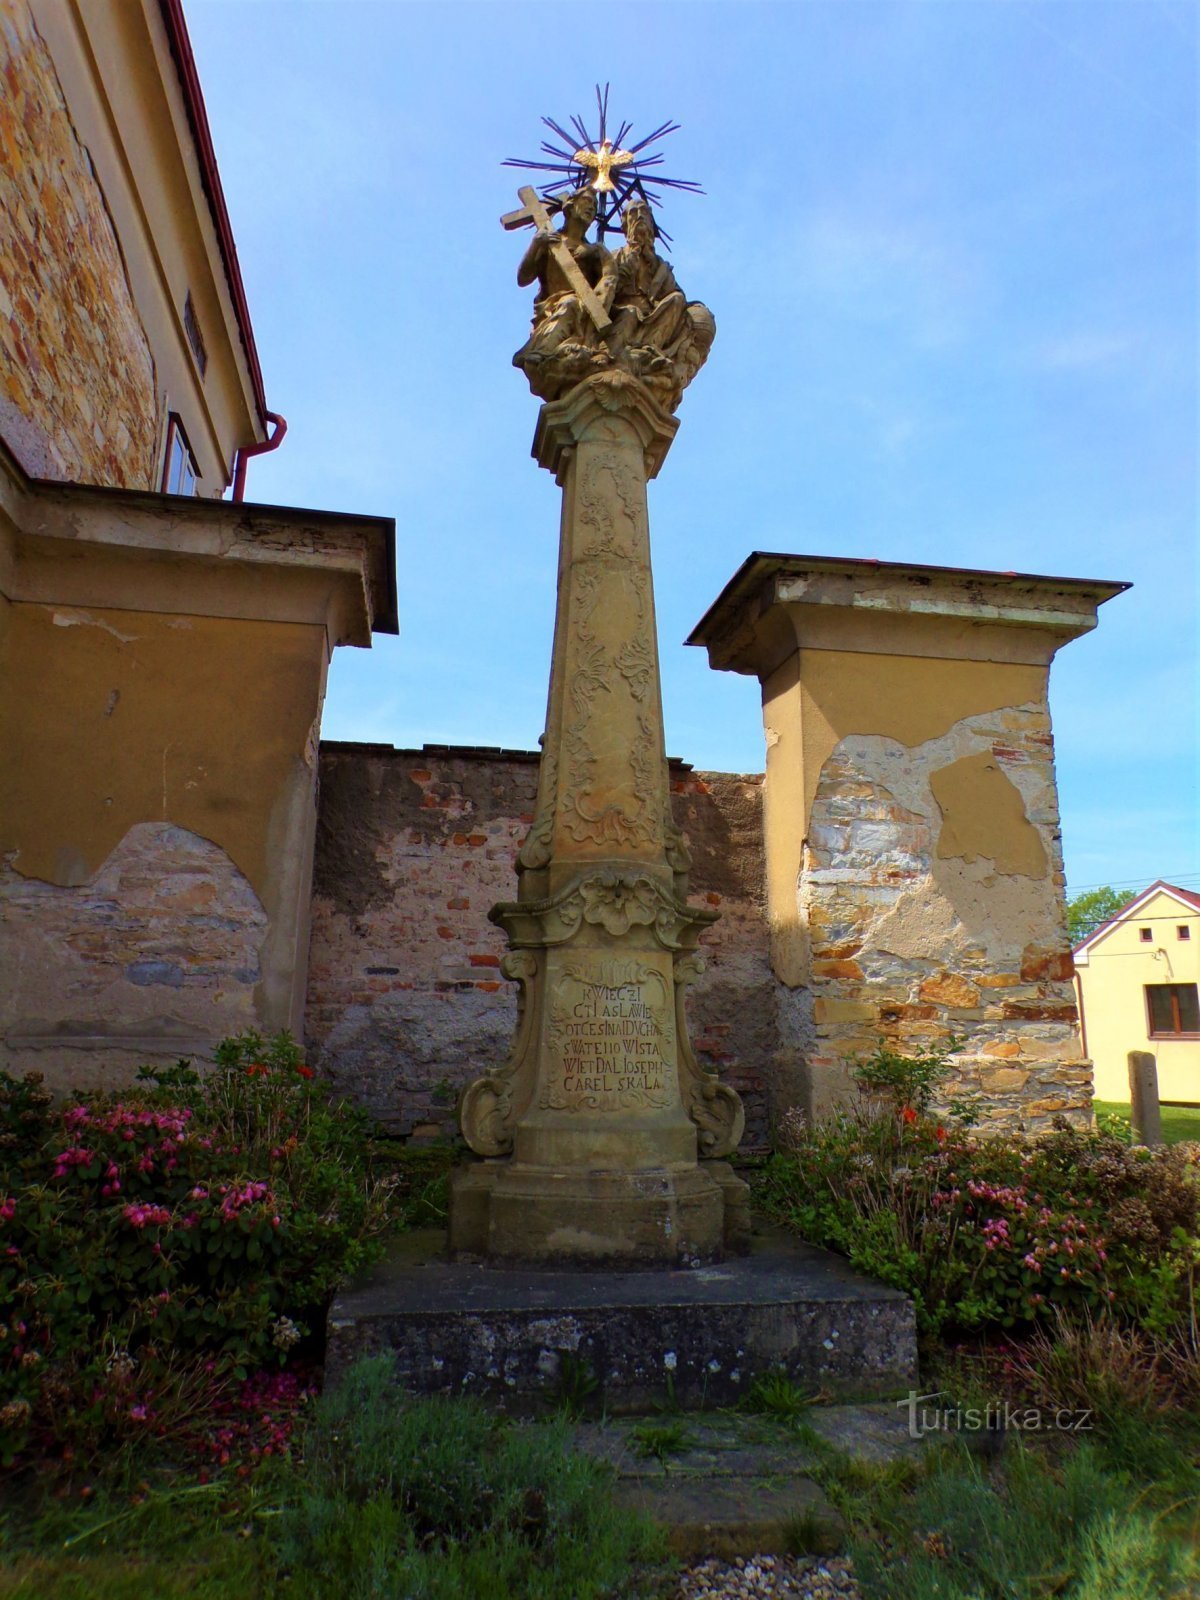 Una columna con una escultura de la Santísima Trinidad en la rectoría (Borohrádek, 20.5.2022/XNUMX/XNUMX)